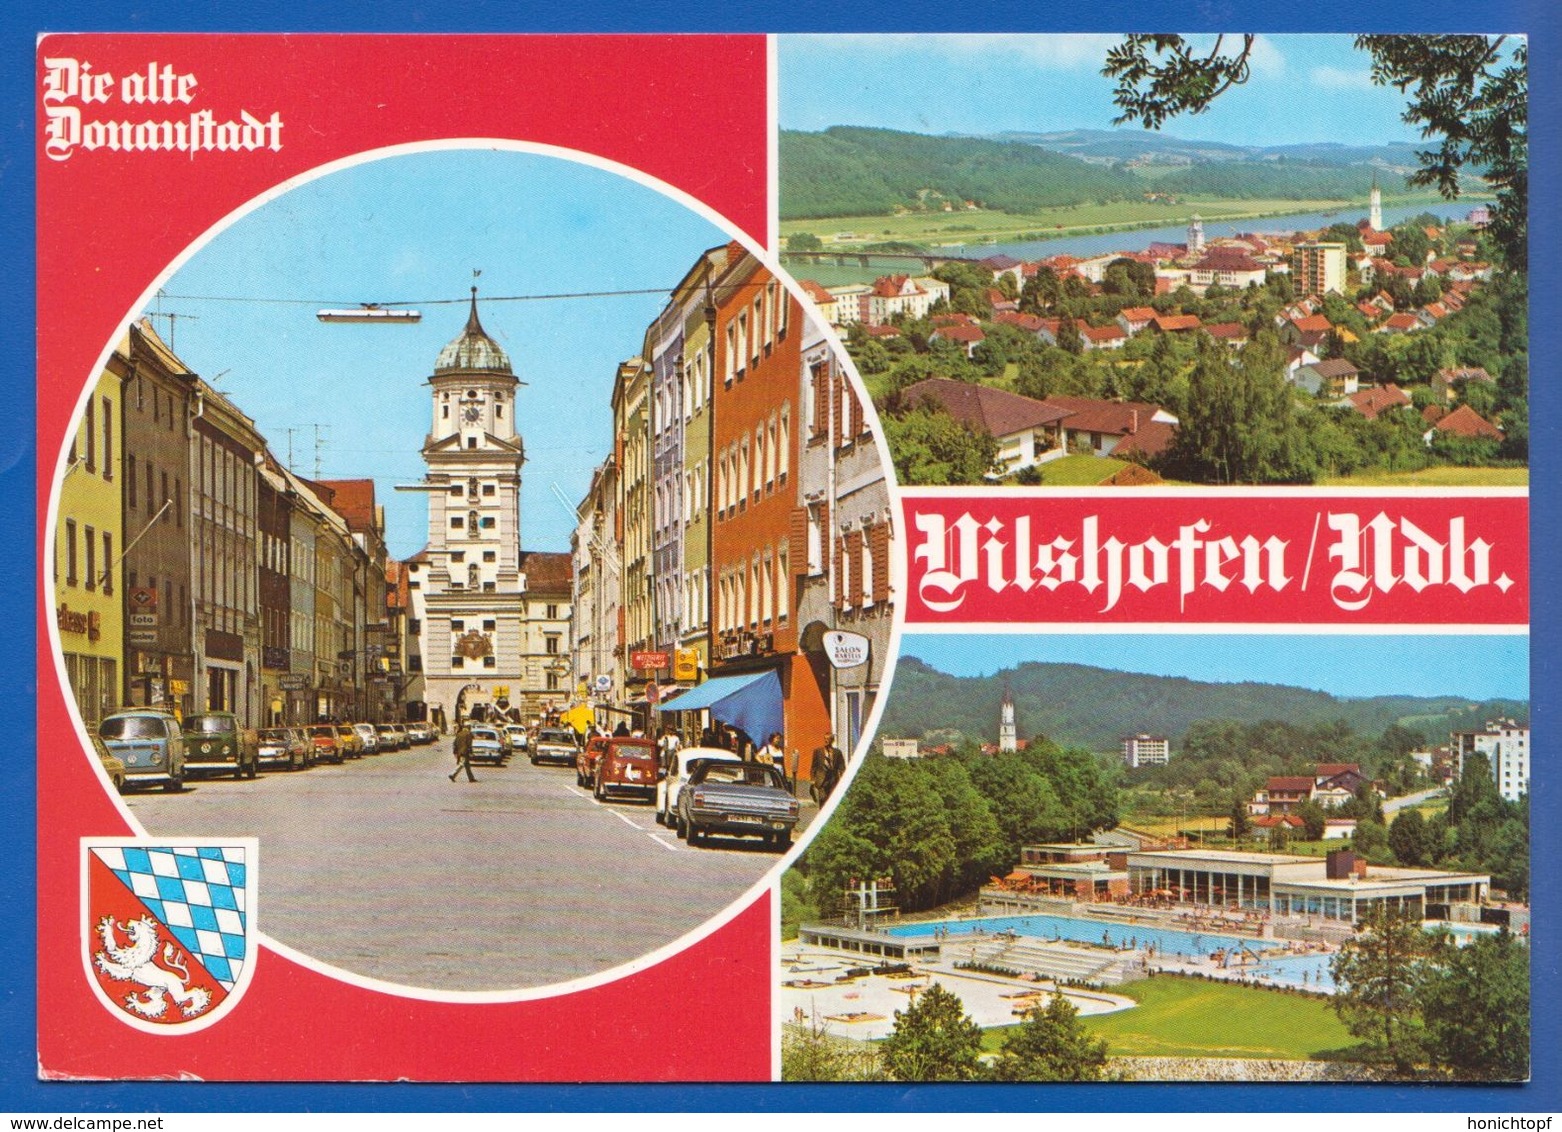 Deutschland; Vilshofen Donau; Multibildkarte - Vilshofen